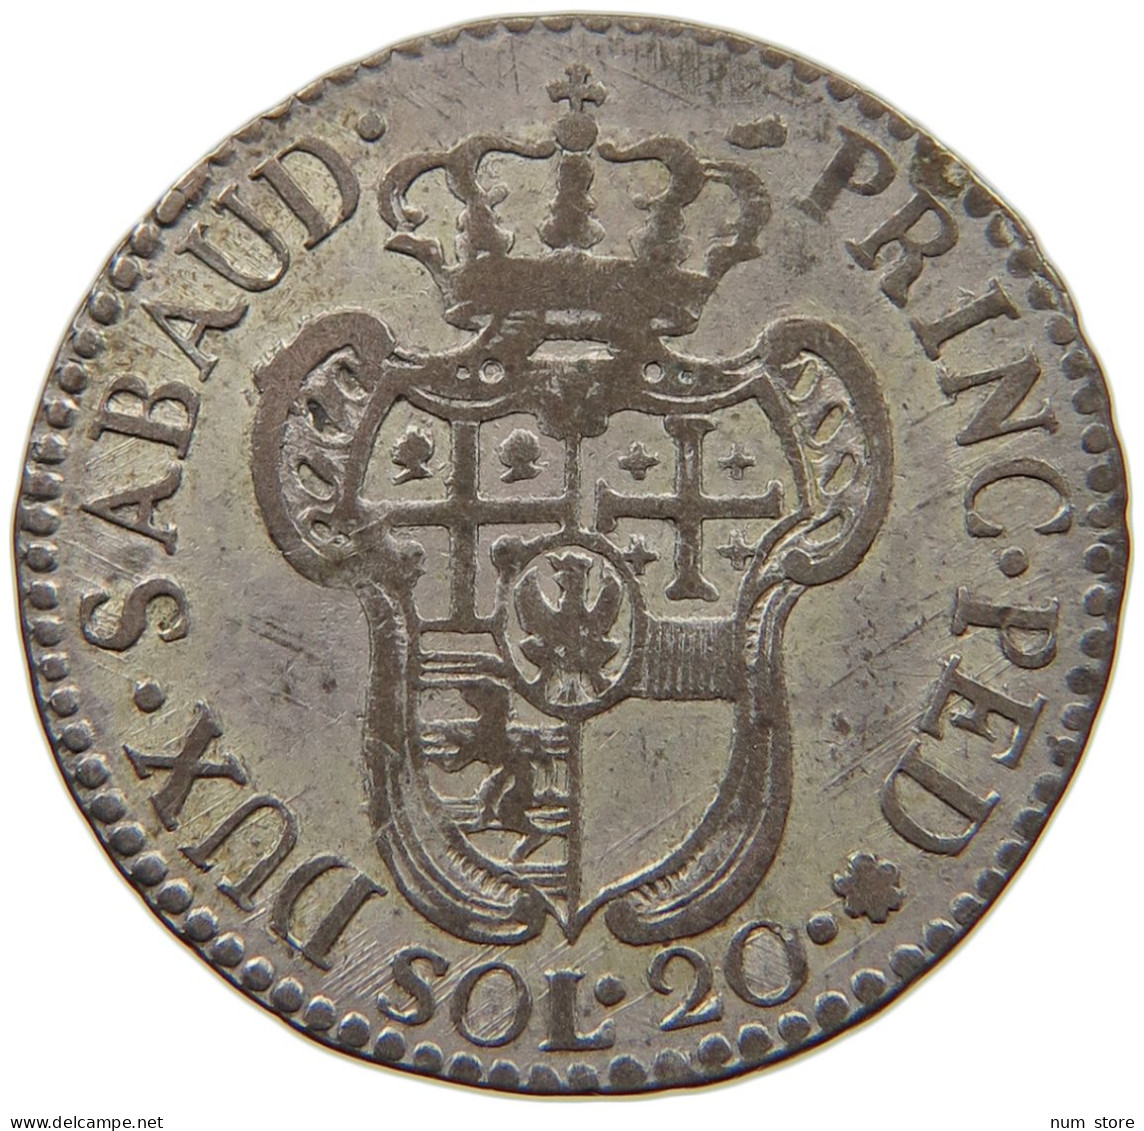 ITALIEN-SARDINIEN 20 SOLDI 1796 VITTORIO AMADEO III., 1773-1796. #MA 008542 - Piemonte-Sardegna, Savoia Italiana